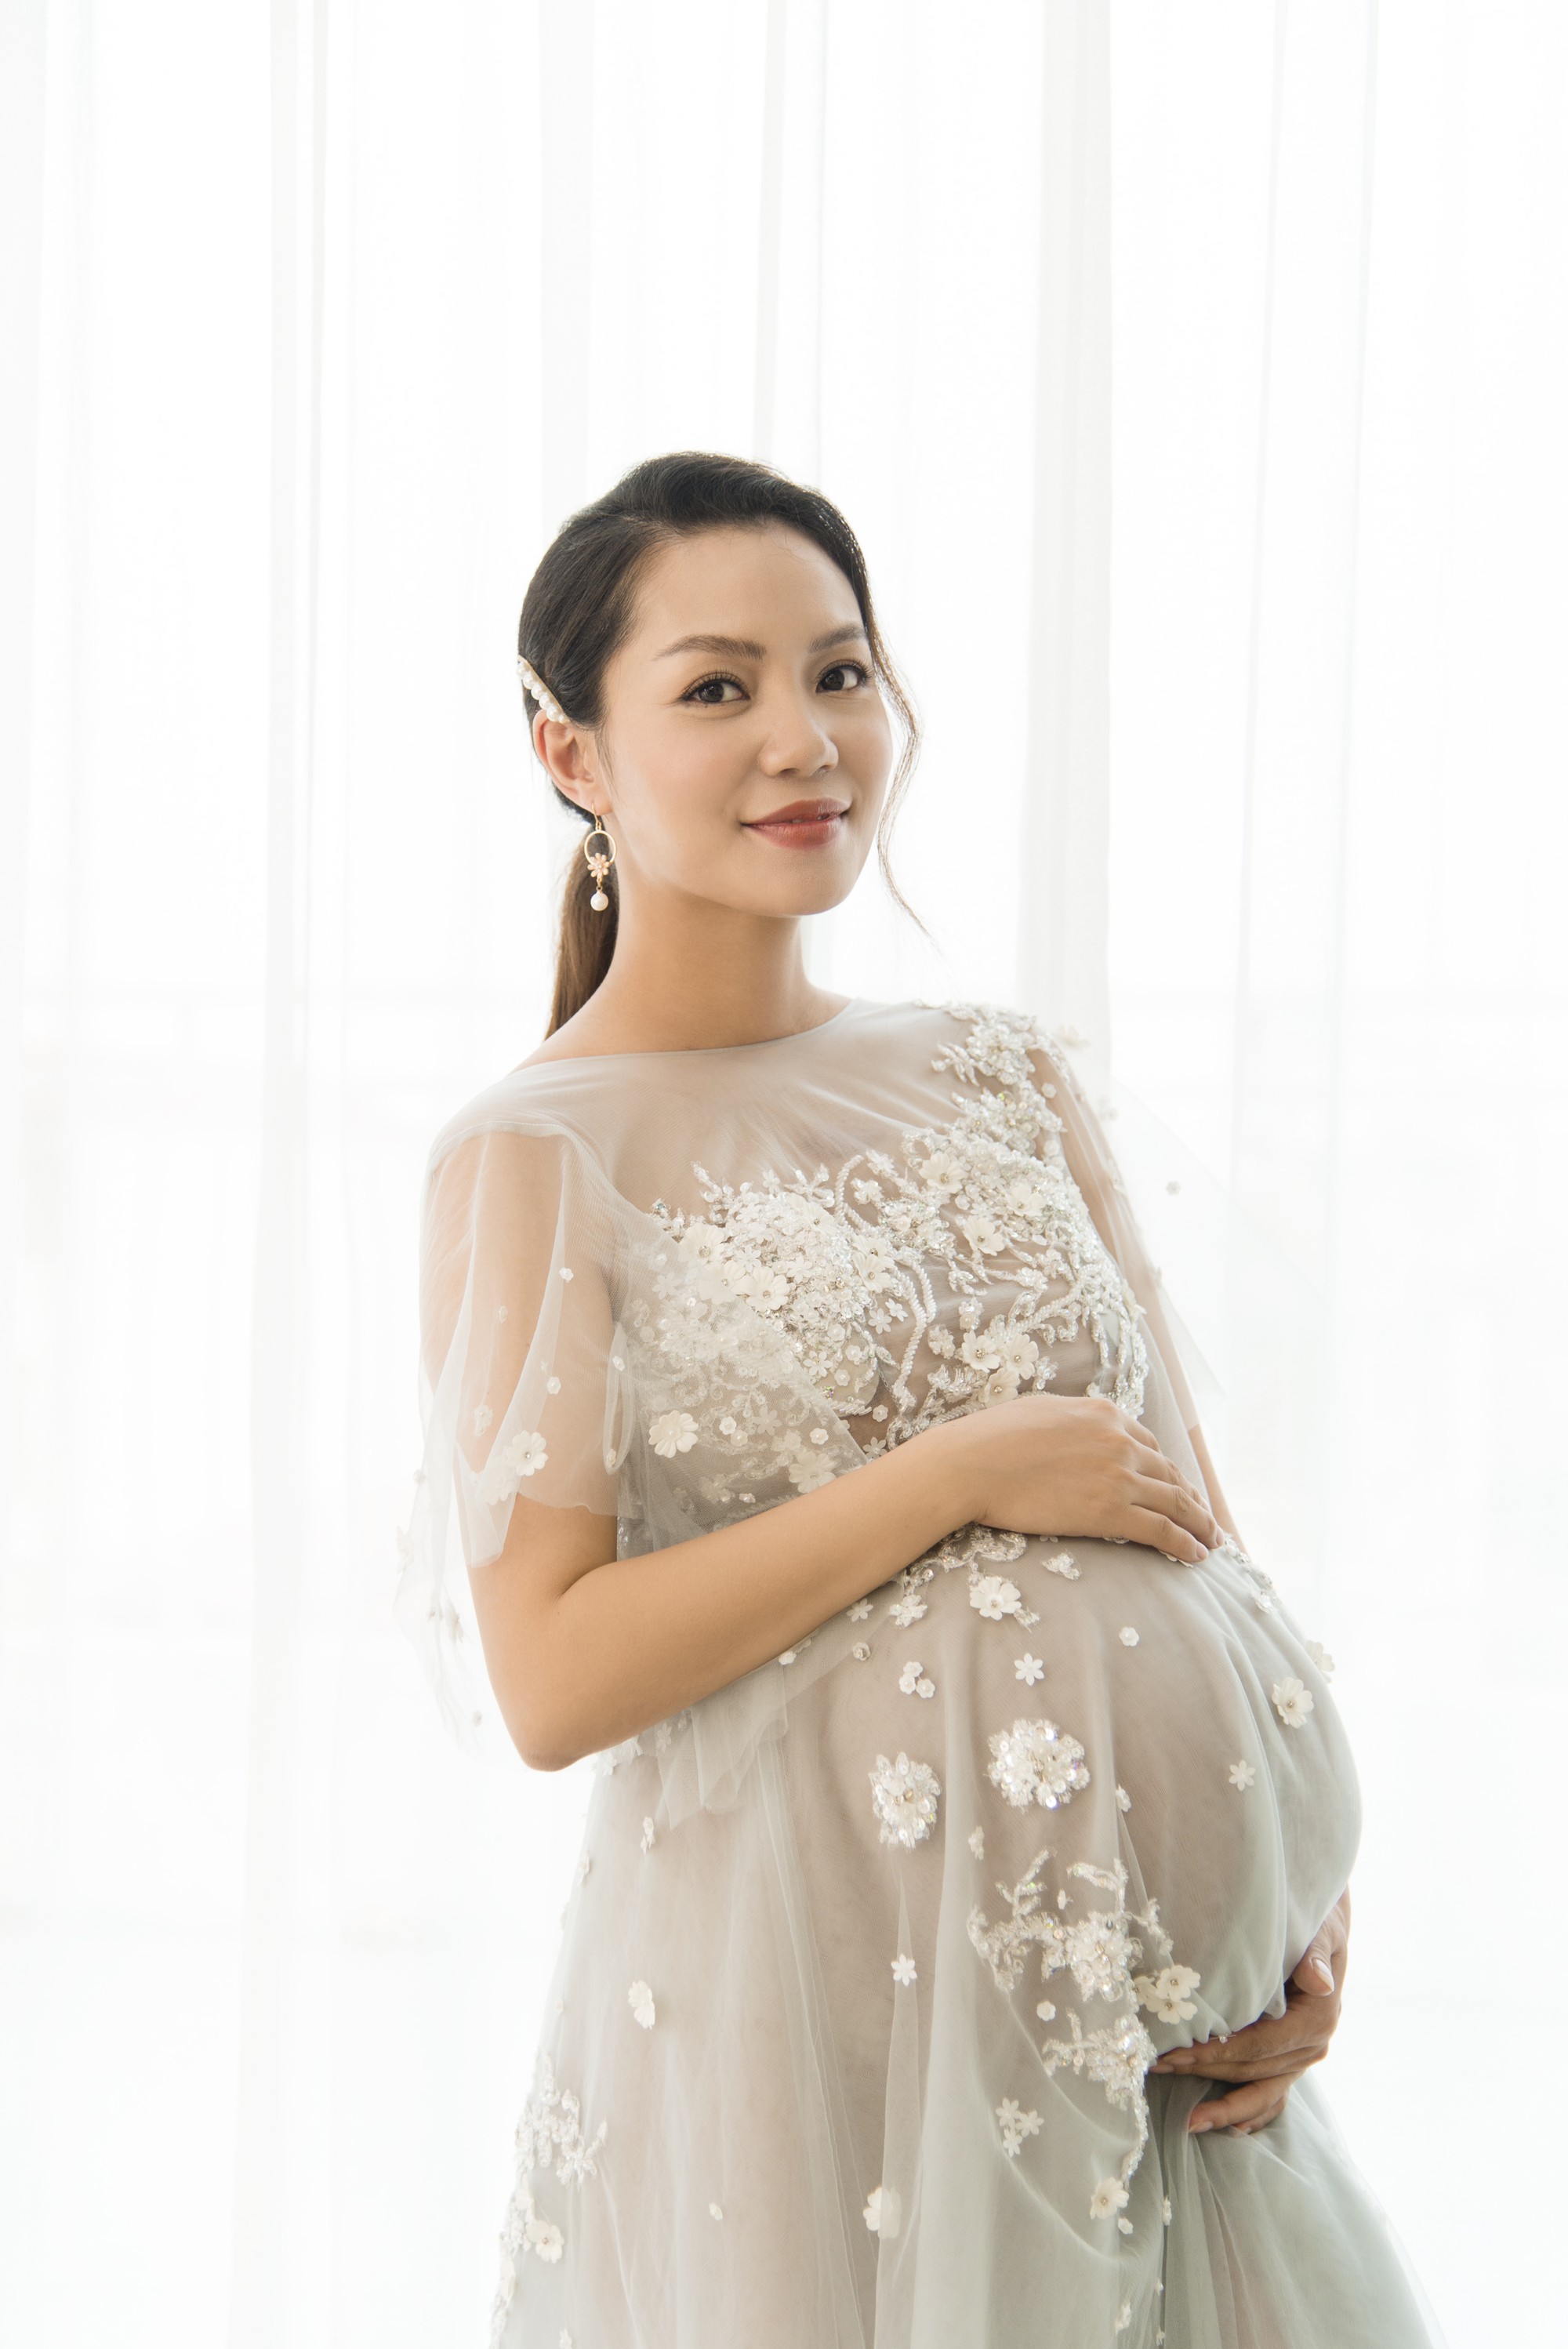 Ca sĩ Ngọc Anh chính thức sinh con sau 12 năm đổ vỡ hôn nhân-3